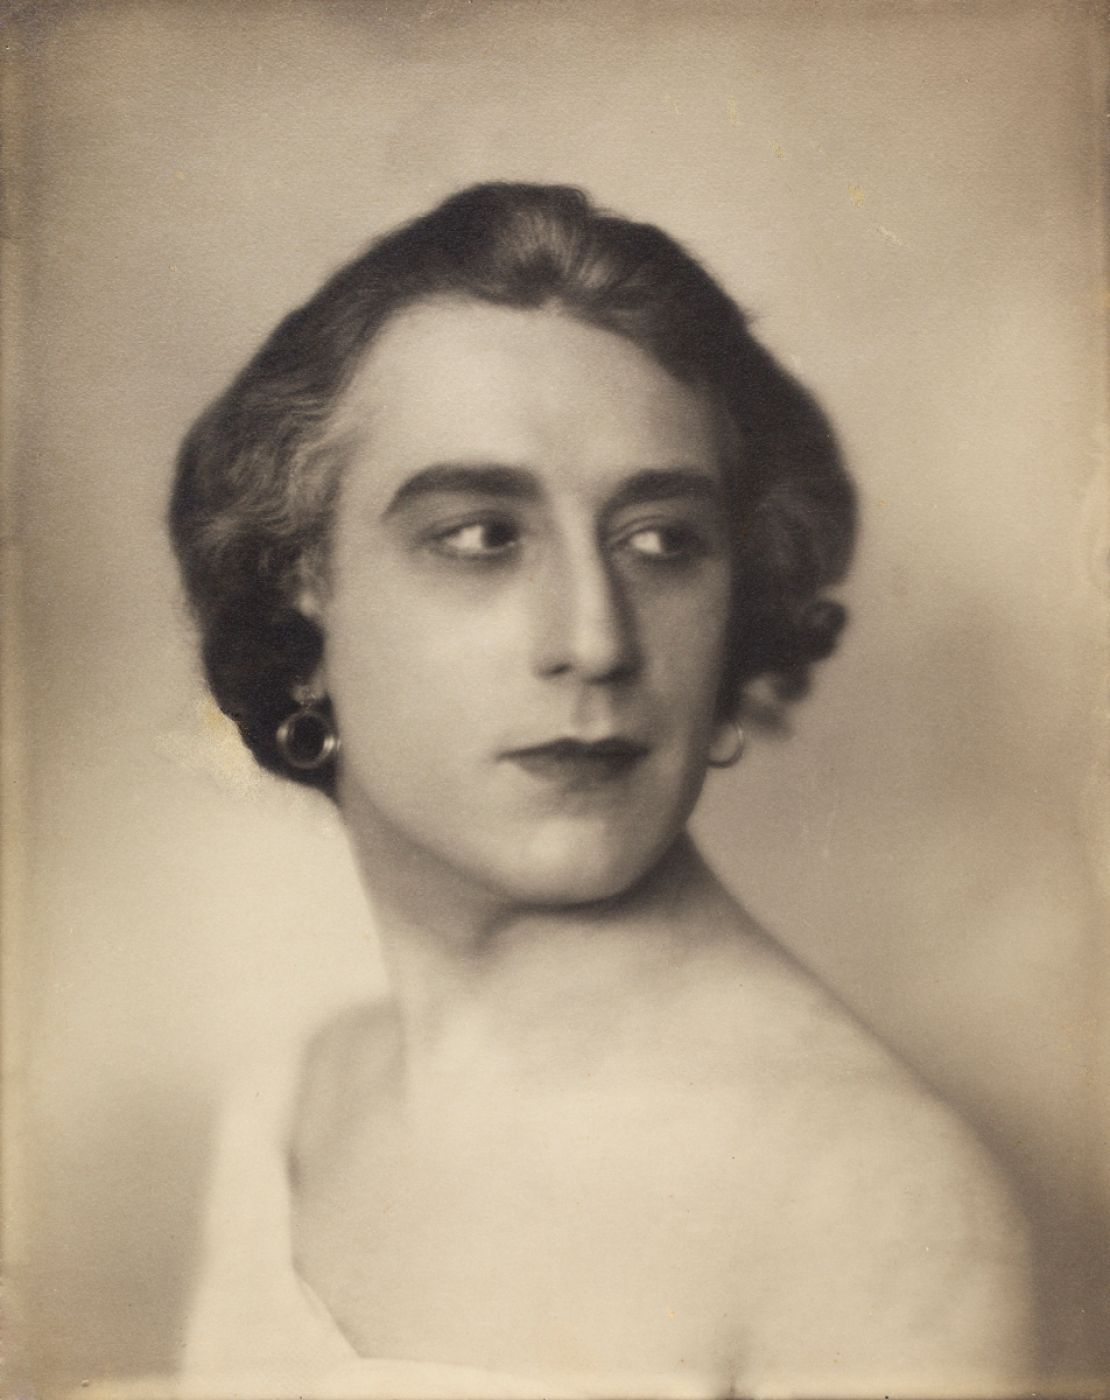 Boris Lipnitzky, “Abel Gance as Saint-Just in Napolèon (1927)”, 1927